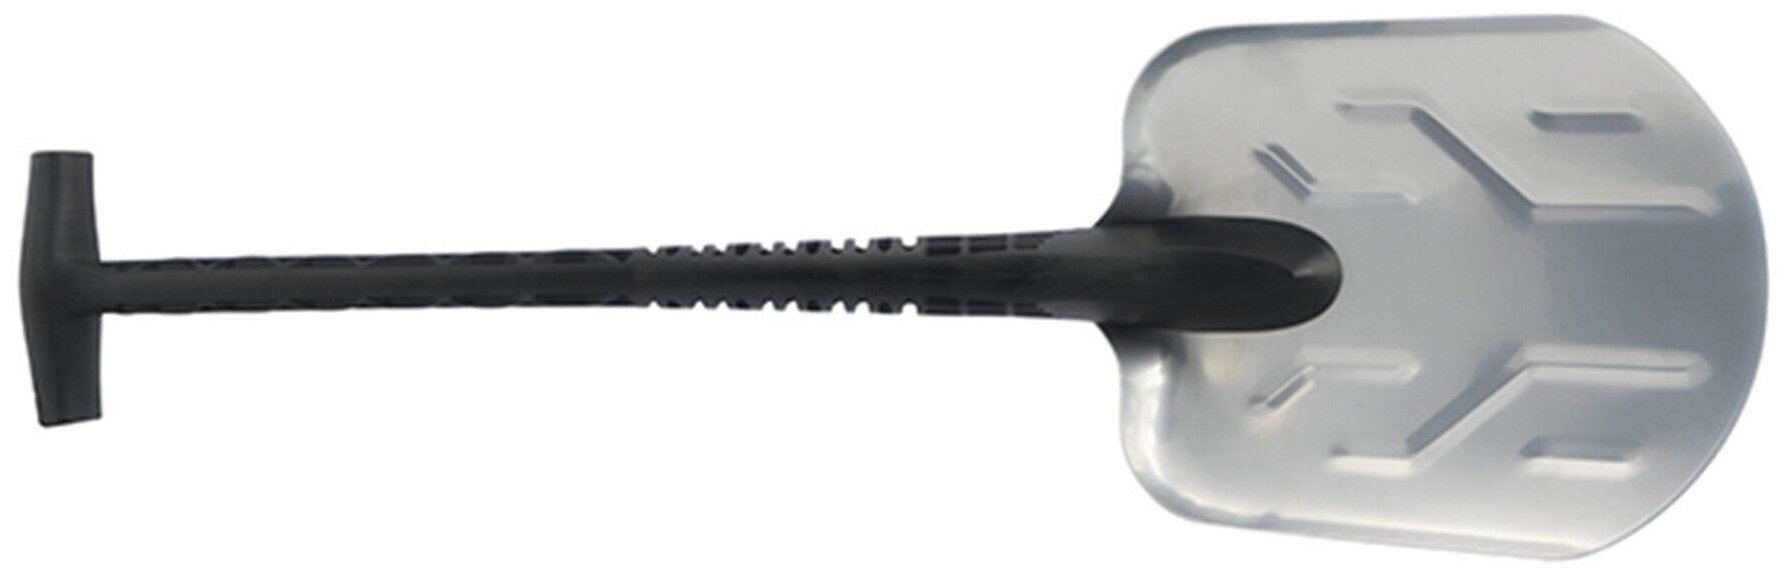 Лопата ACECAMP Snow Shovel 2591, алюминий, длина 720мм, ширина 130мм, высота 200мм, серебристый